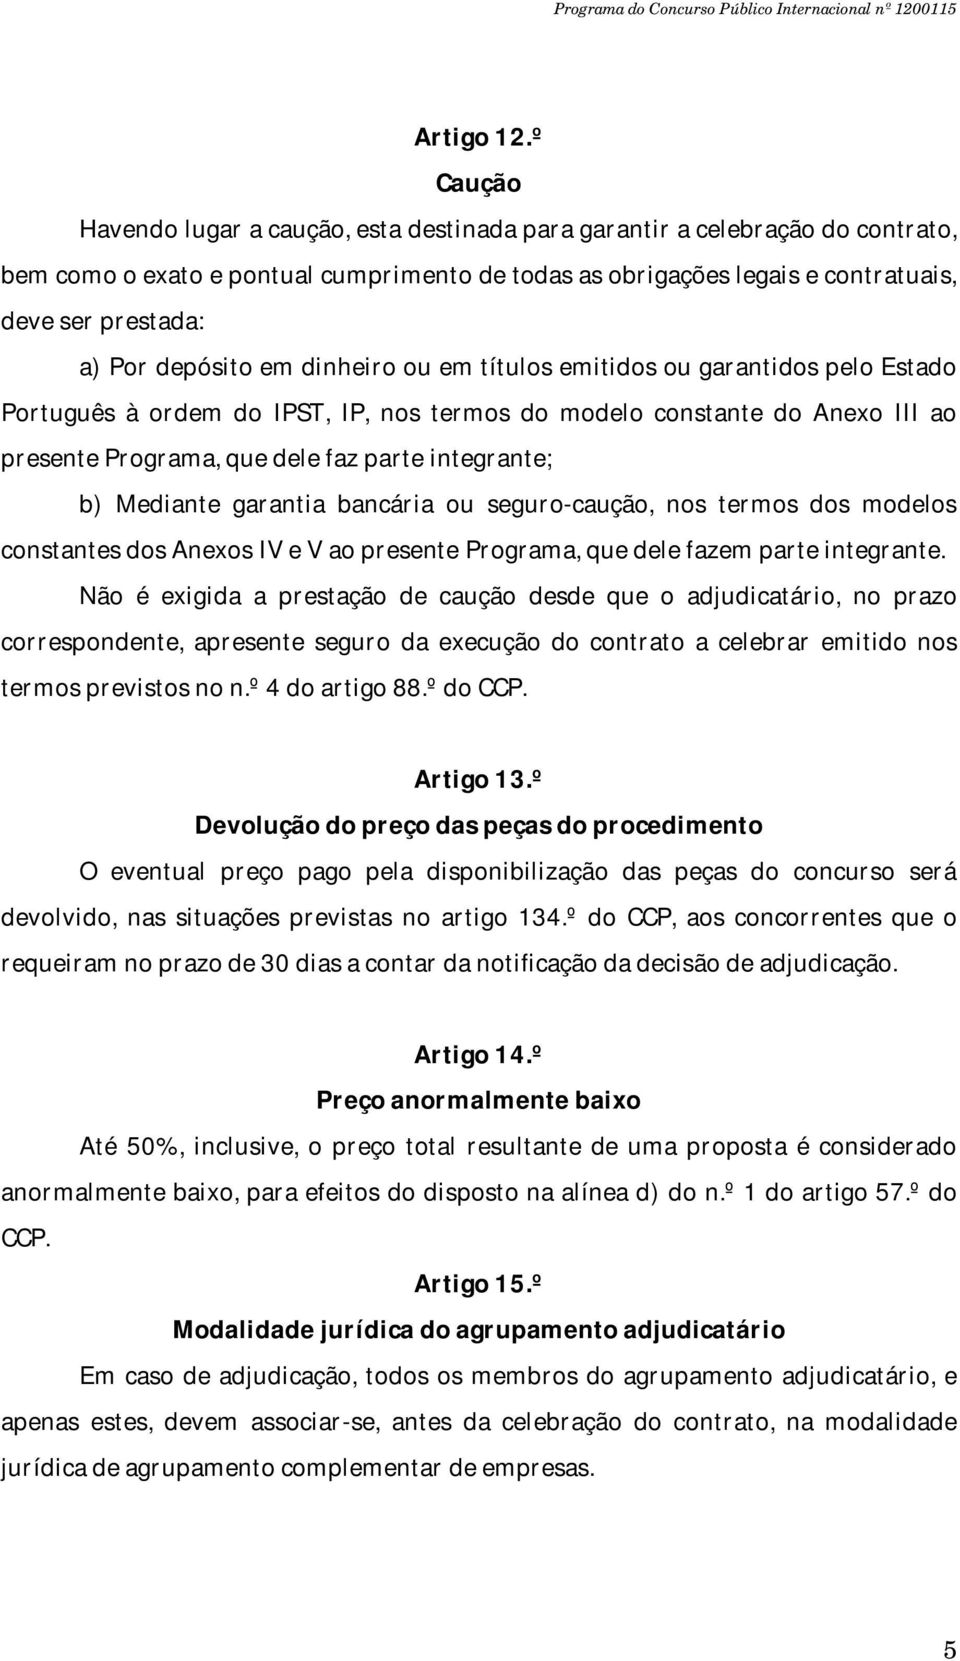 depósito em dinheiro ou em títulos emitidos ou garantidos pelo Estado Português à ordem do IPST, IP, nos termos do modelo constante do Anexo III ao presente Programa, que dele faz parte integrante;